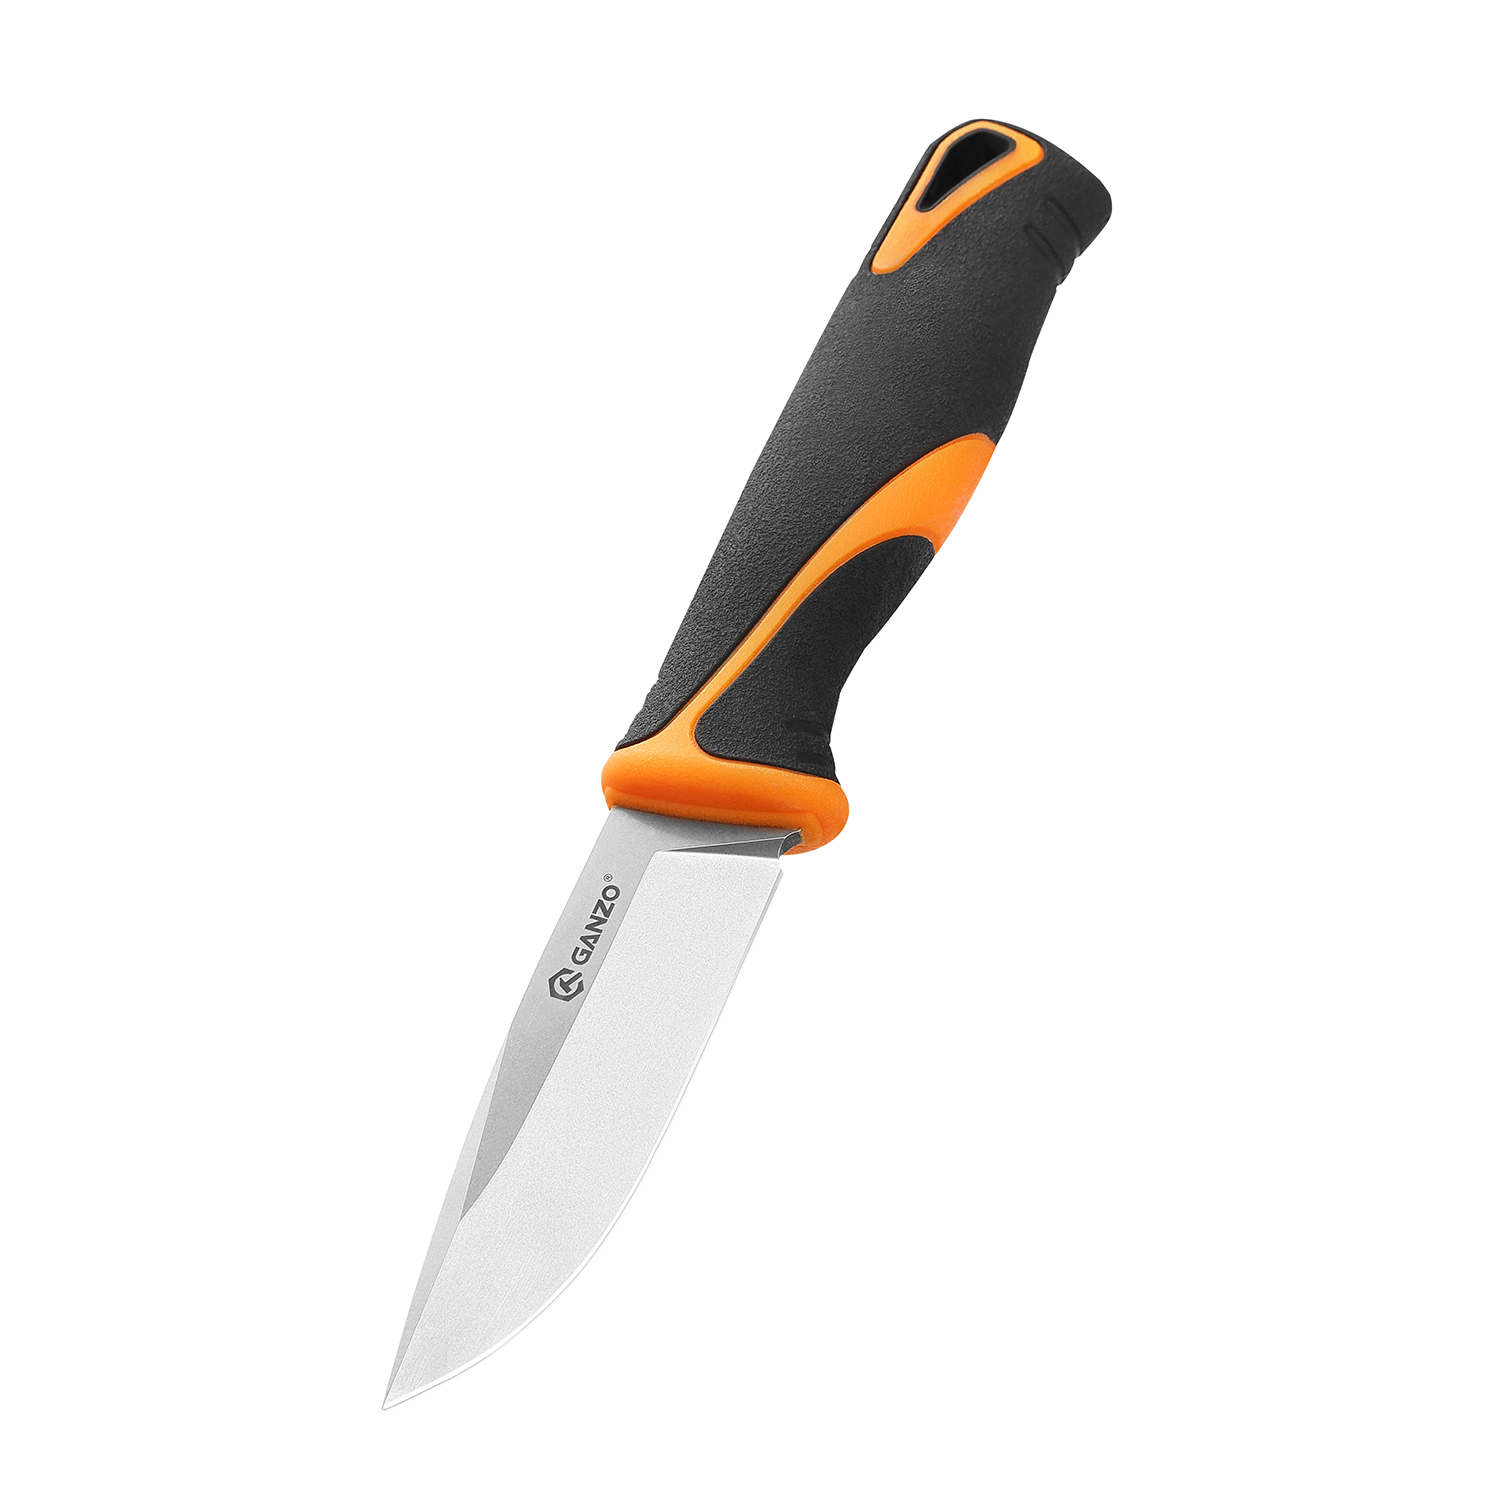 Нож Ganzo Fixed/Case, сталь 9Cr14Mov, рукоять прорезиненный пластик, чернo-оранжевый - фото 1